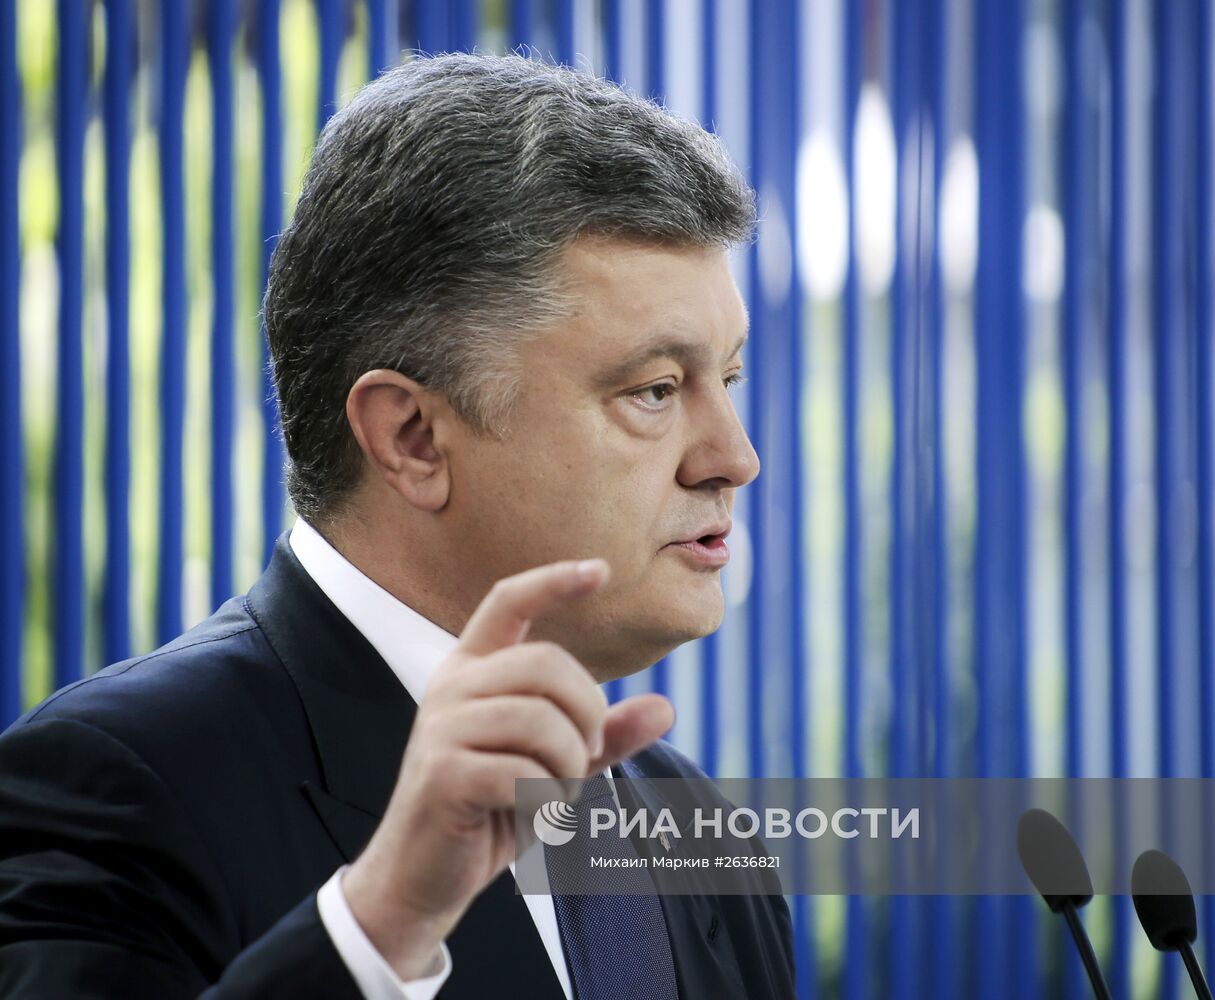 Пресс-конференция президента Украины по случаю ежегодного послания к Верховной раде